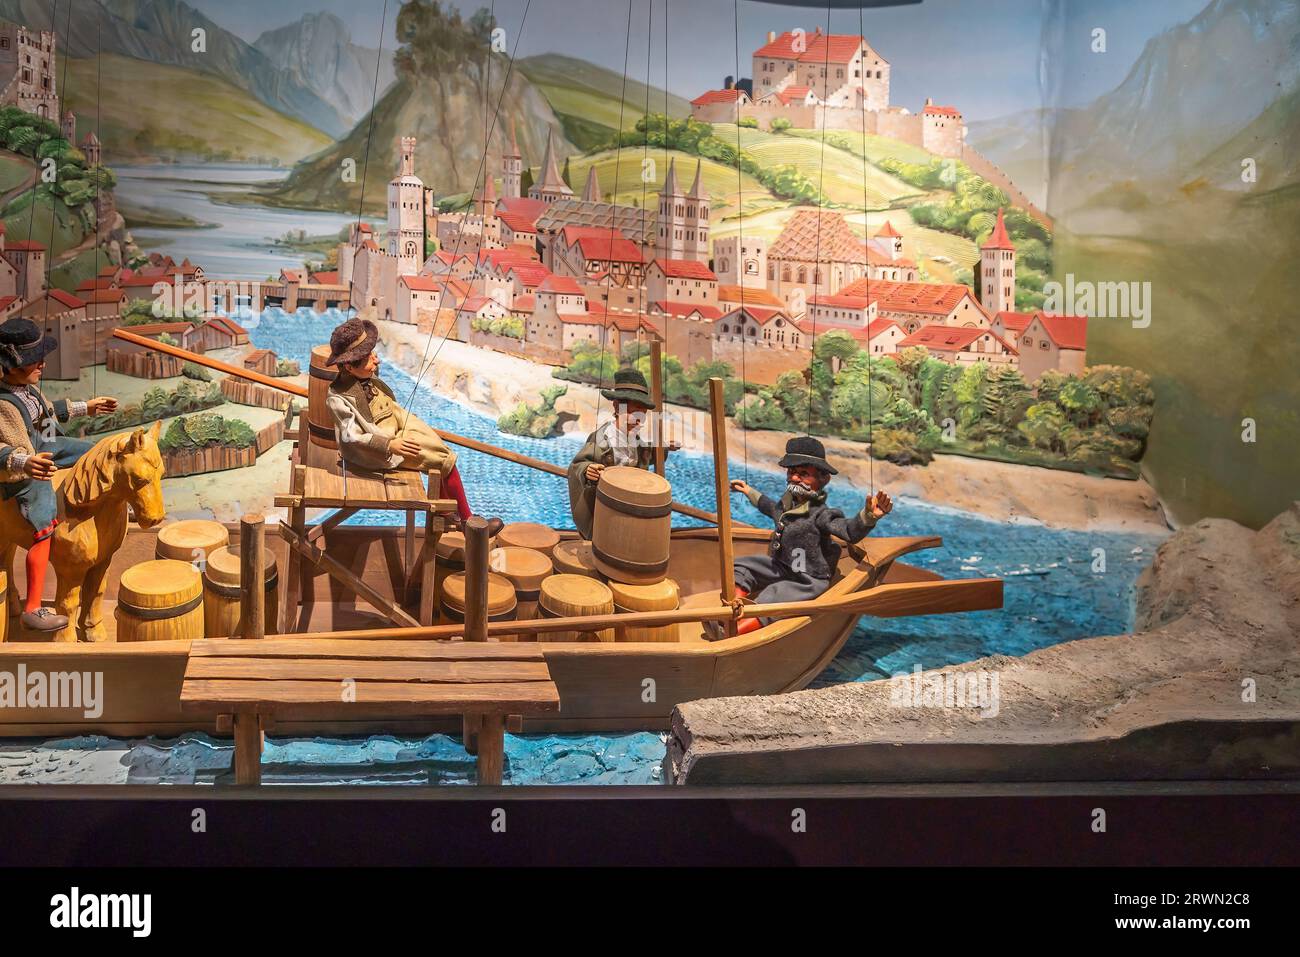 Marionettenmuseum in der Festung Hohensalzburg - Salzburg, Österreich Stockfoto